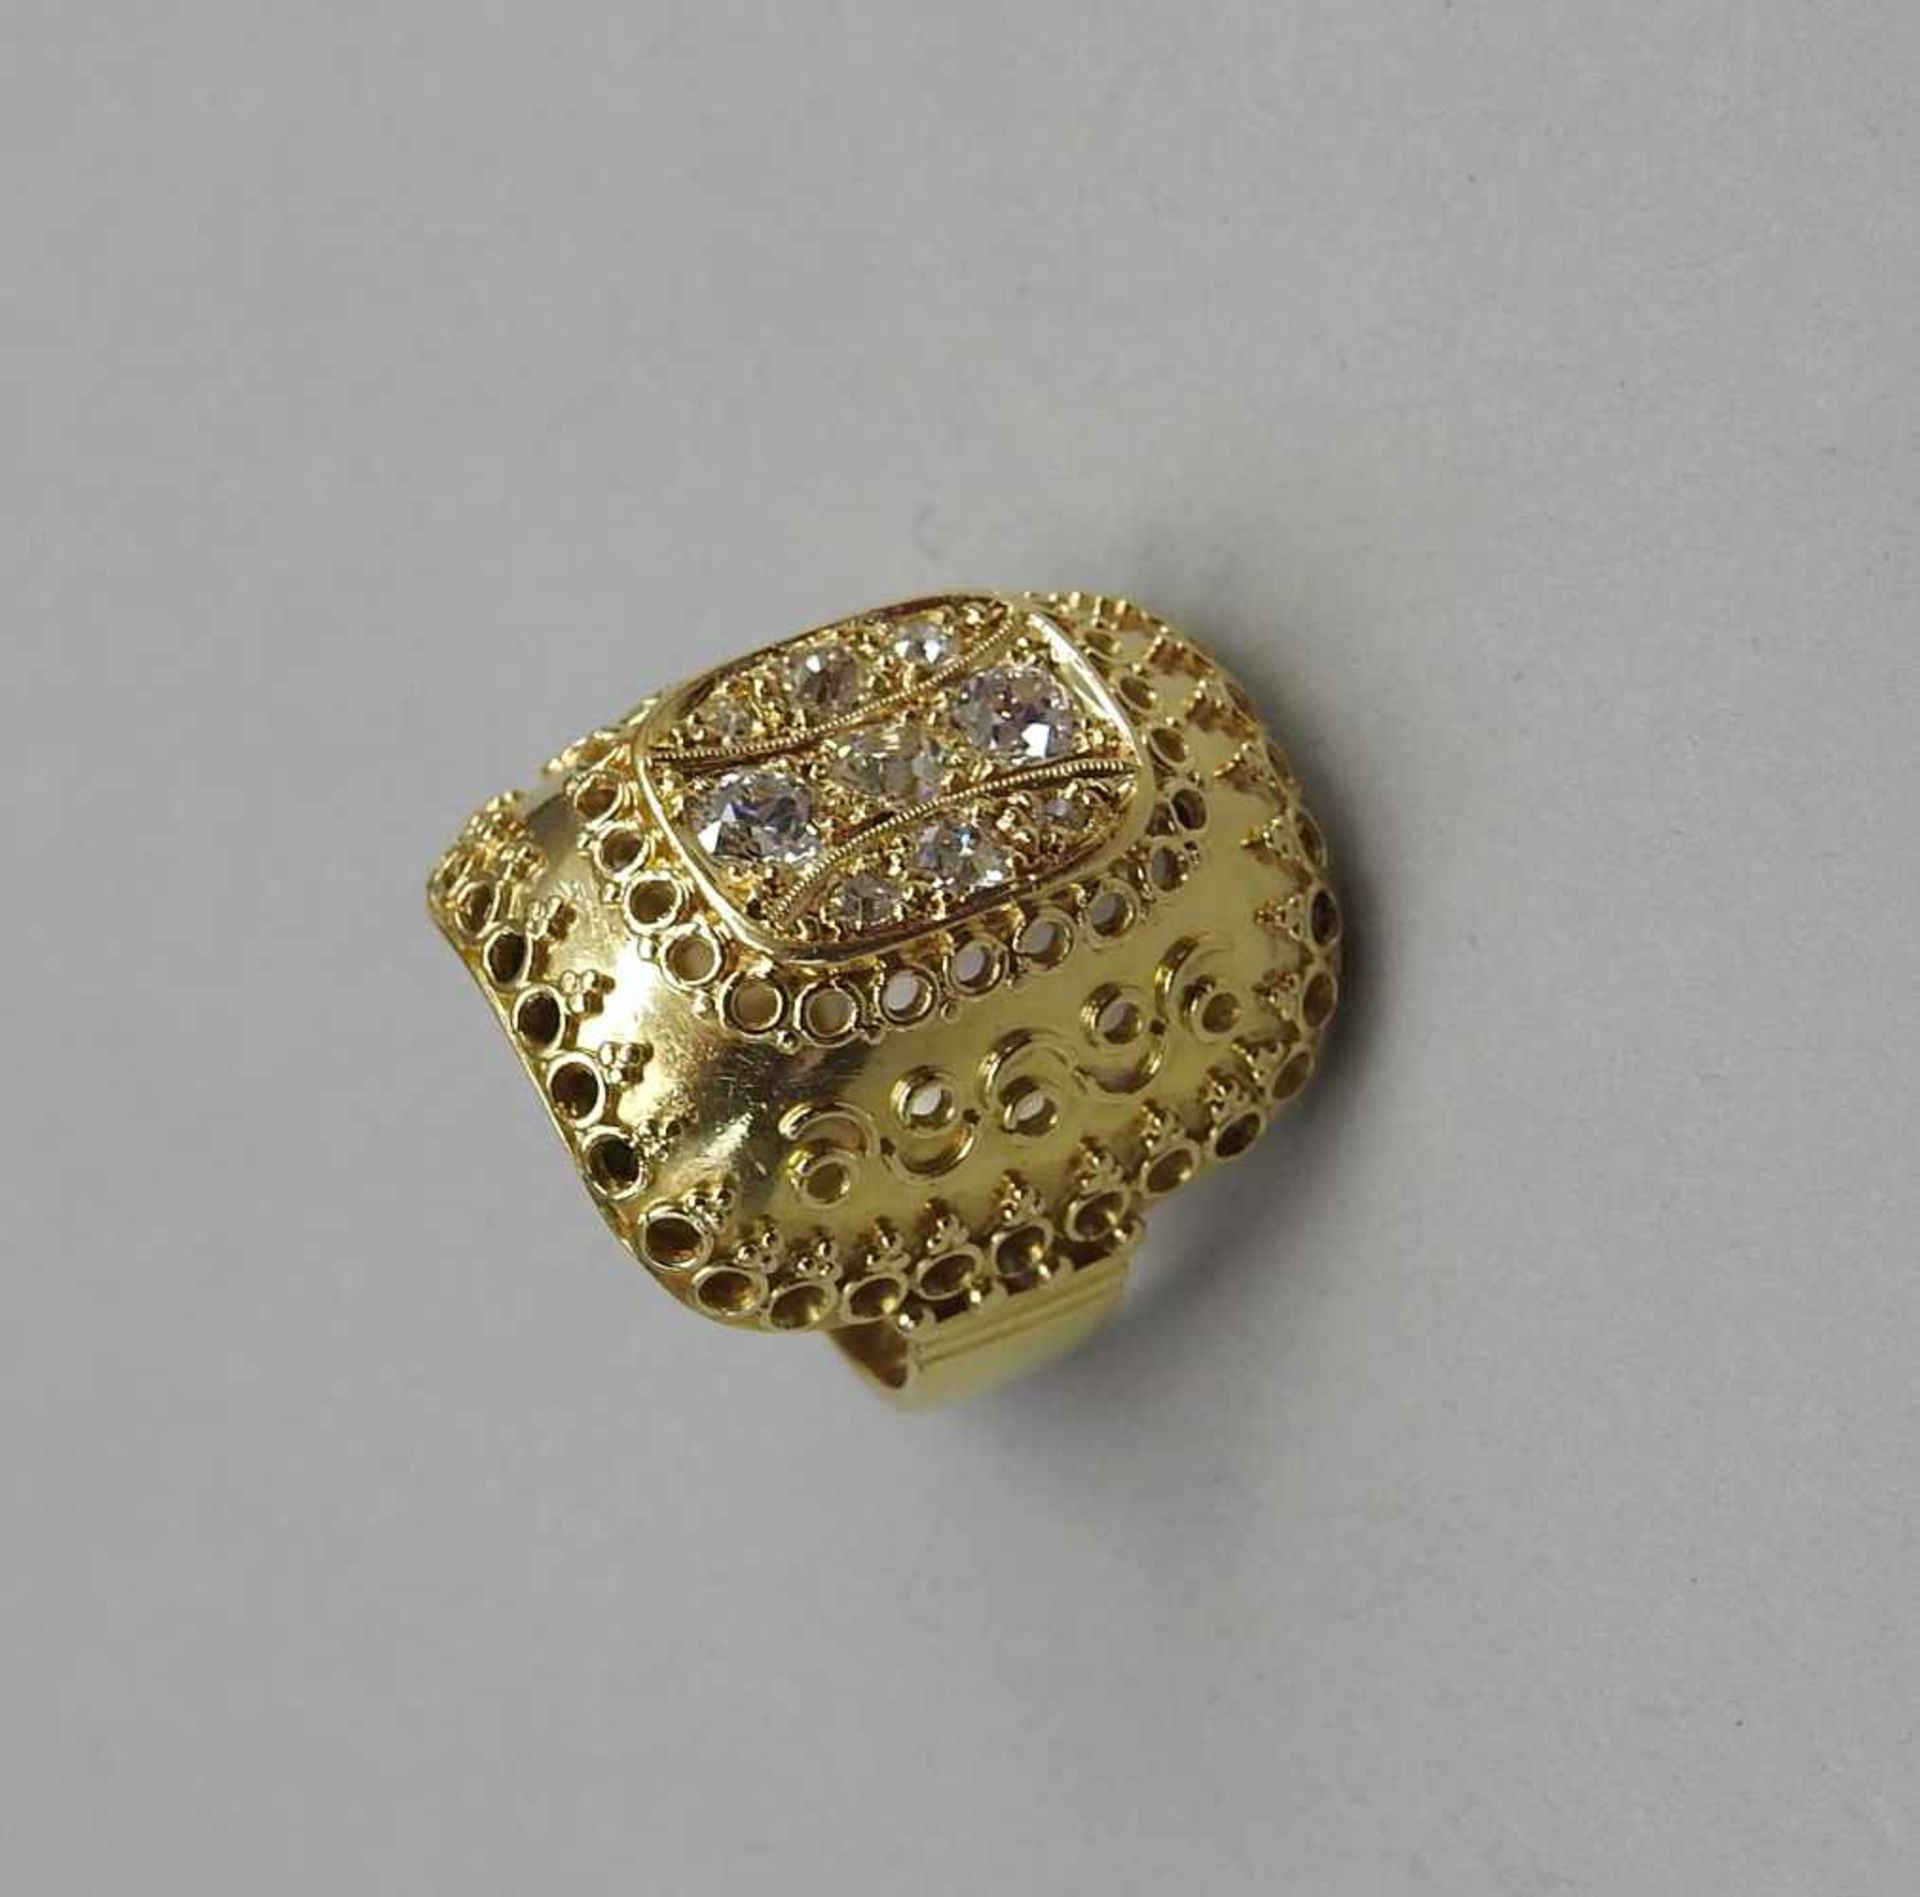 Großer Diamantring18 K. Gelbgold mit einem Diamantbesatz von ca. 0,8 ct. TWVVSI1. Wohl